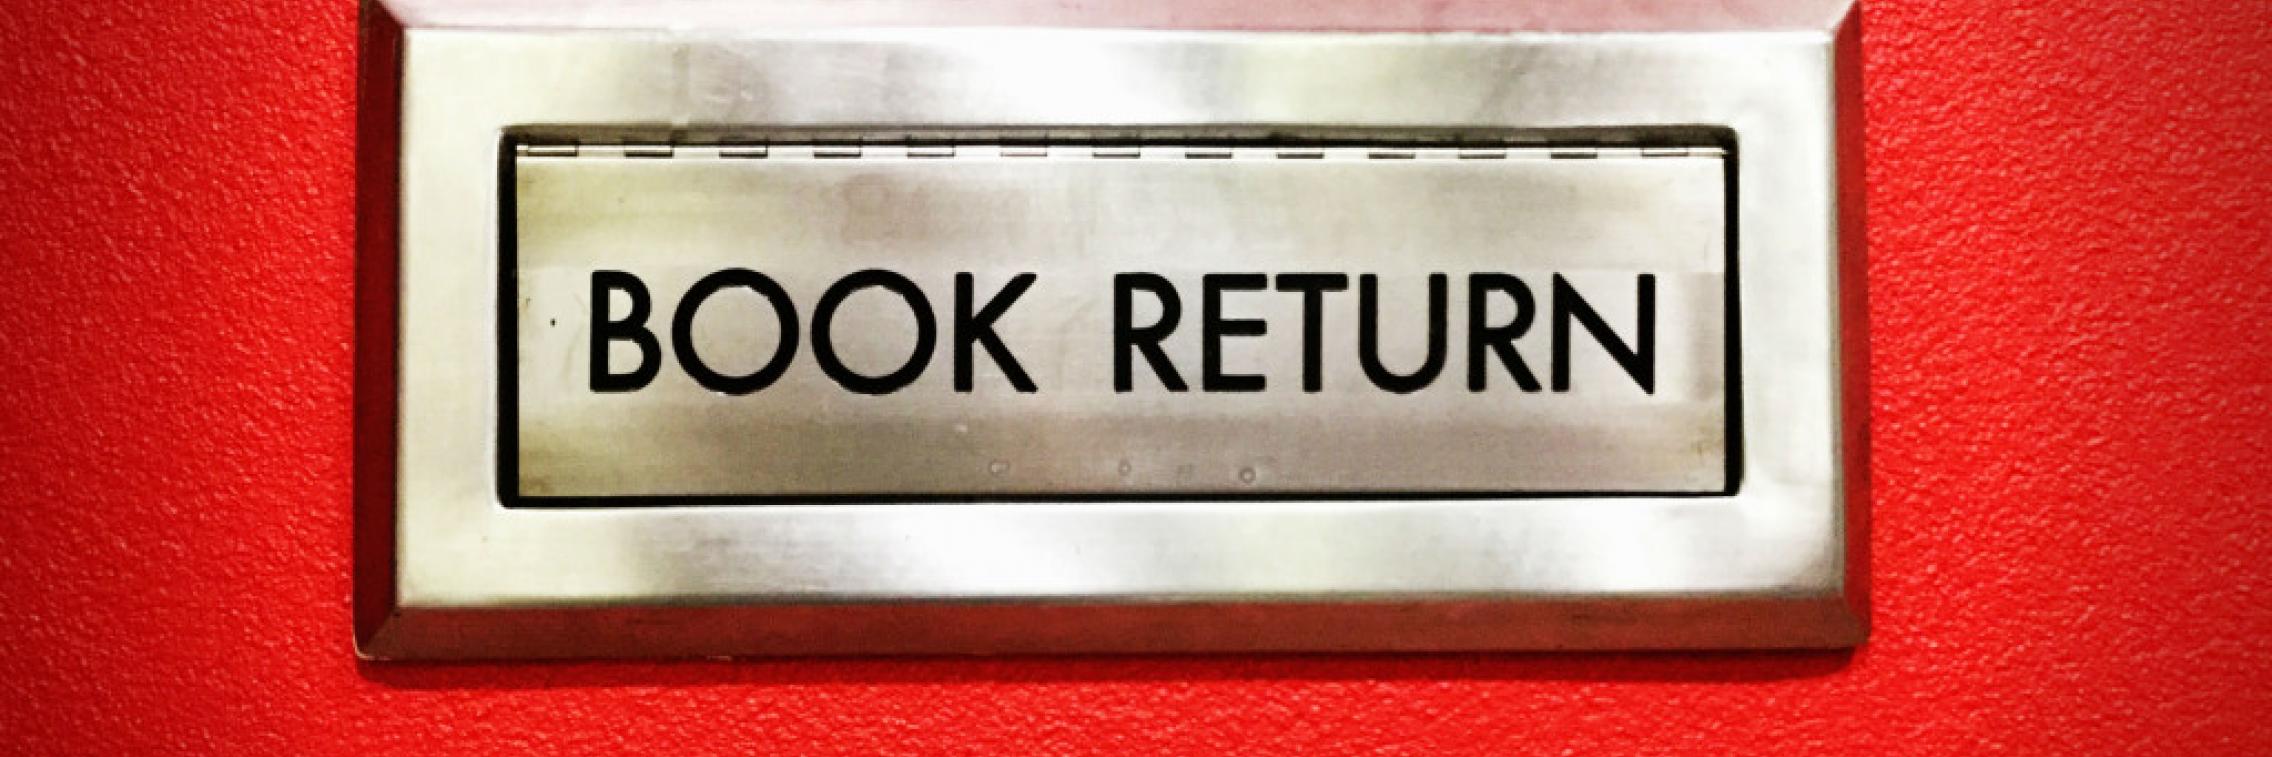 book return chute